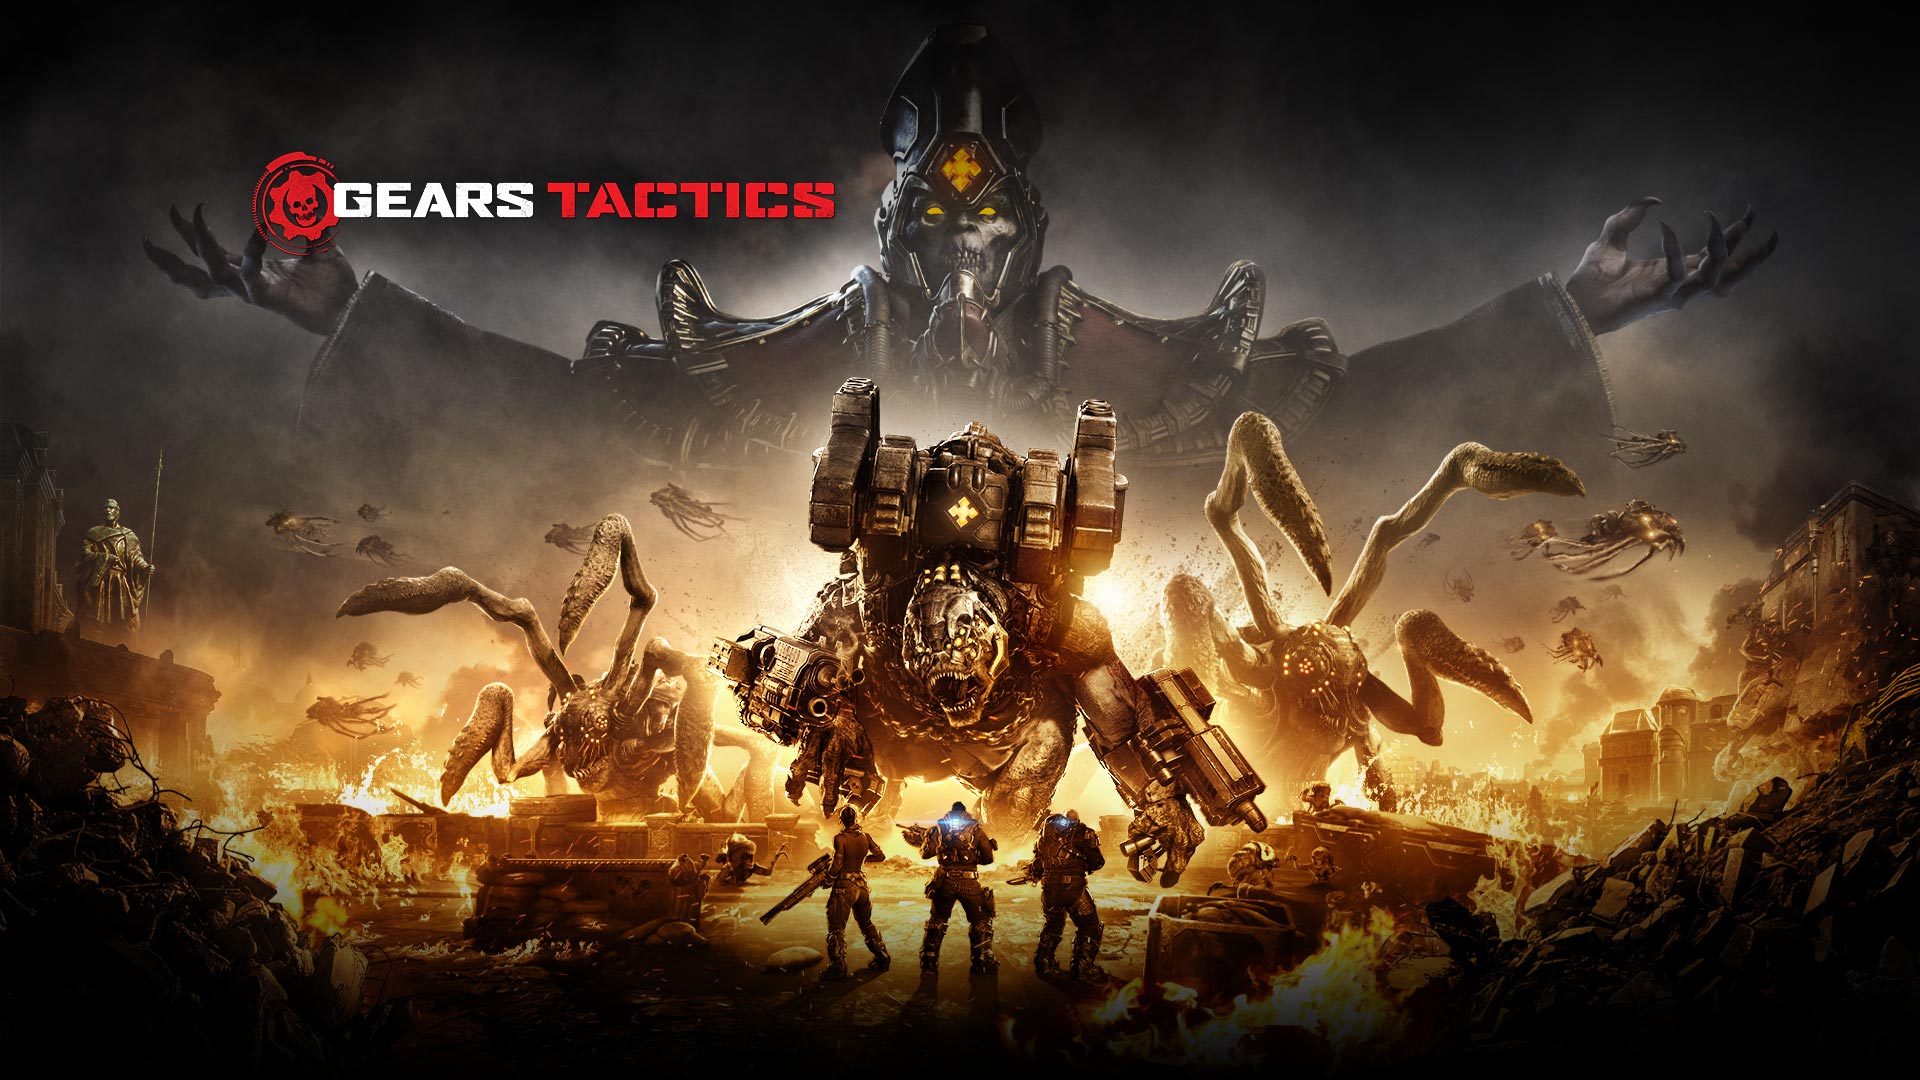 Gears Tactics 標誌，三個角色準備對抗幾個大型怪獸，周遭失火的場景